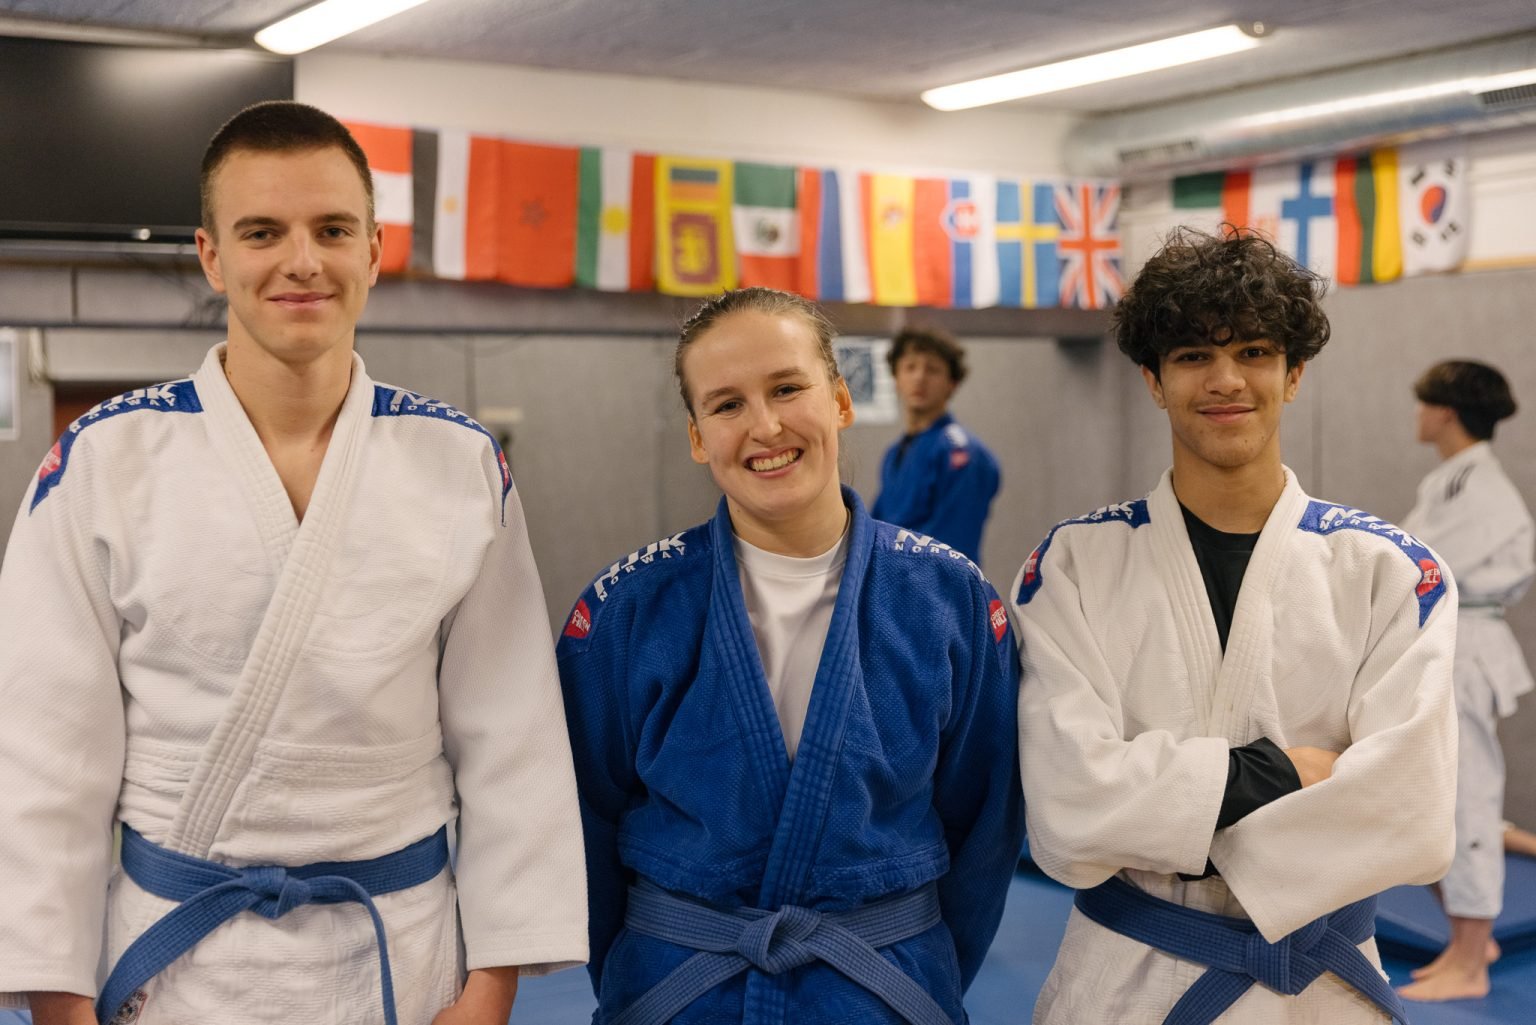 et trenerteam med to gutter iført hvite judodrakter og blått belte, og en jente iført blå judodrakt og blått belte står i en treningssal og smiler inn i kameraet.